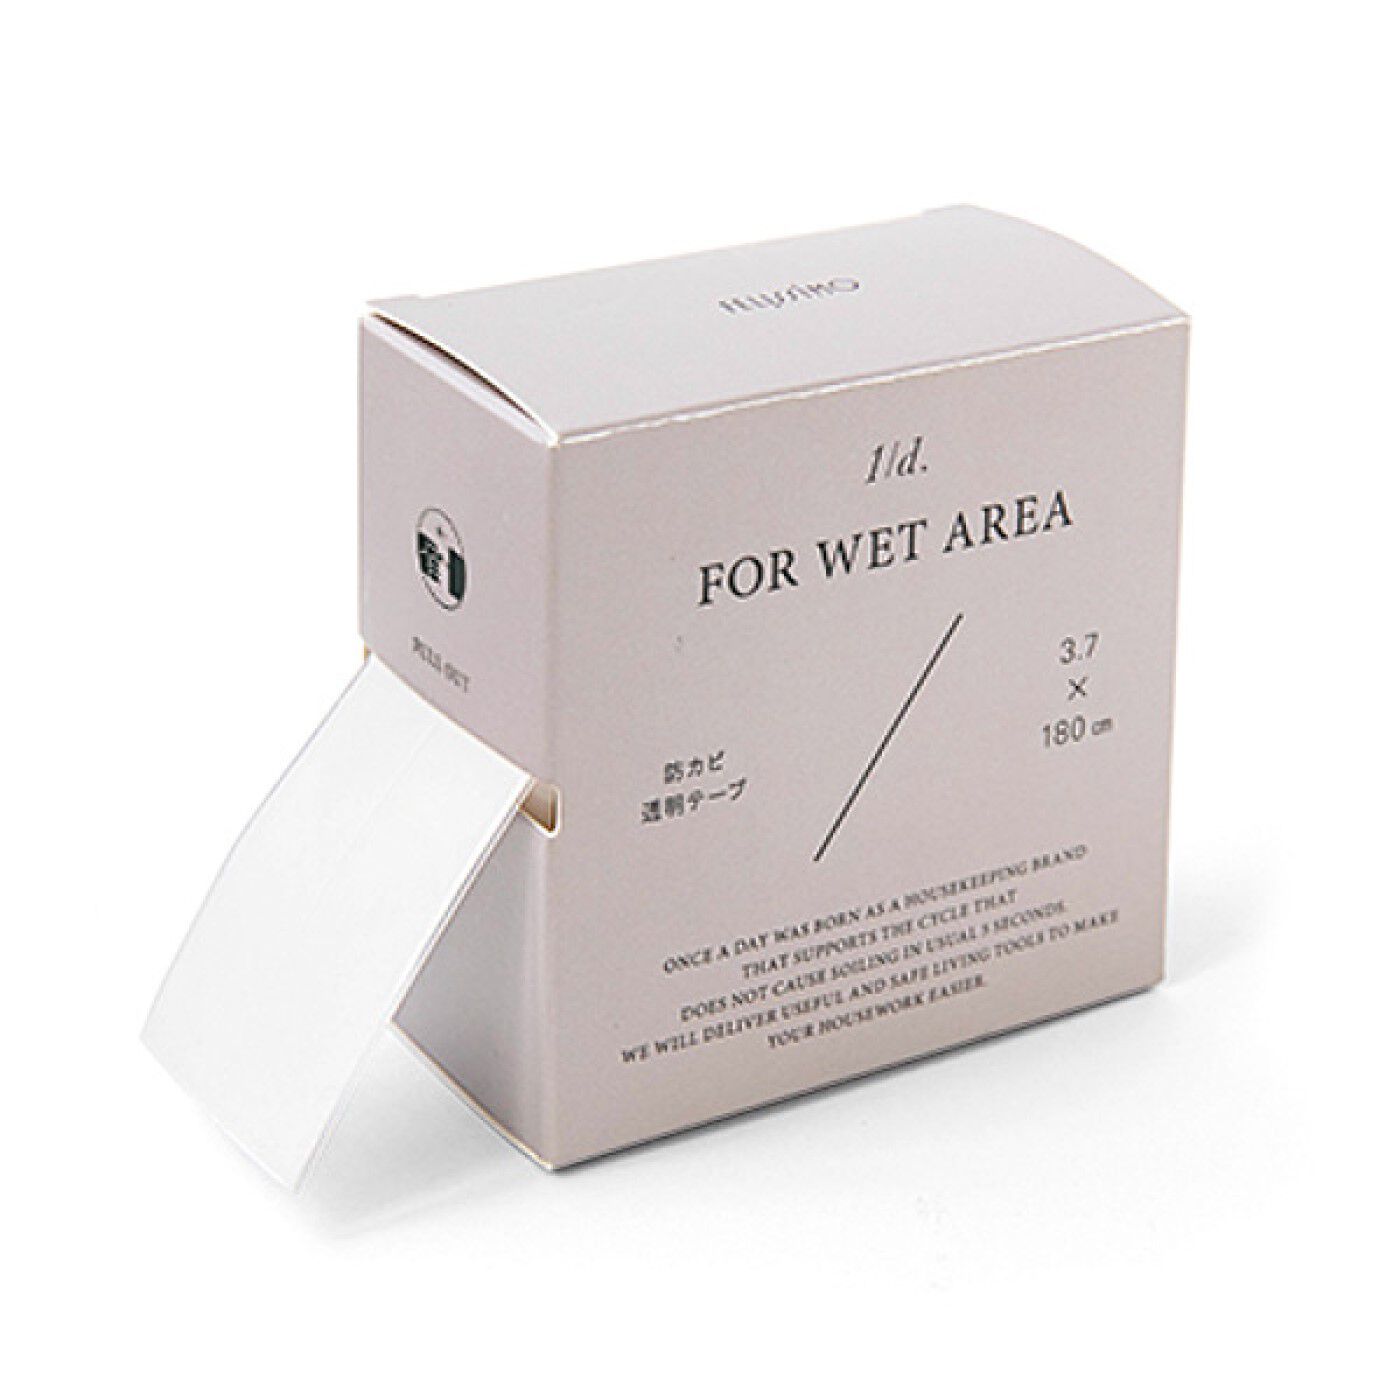 フェリシモの雑貨 Kraso|1/d FOR WET AREA 防カビテープの会|カビの繁殖を抑制する防カビ成分を配合しているテープ。